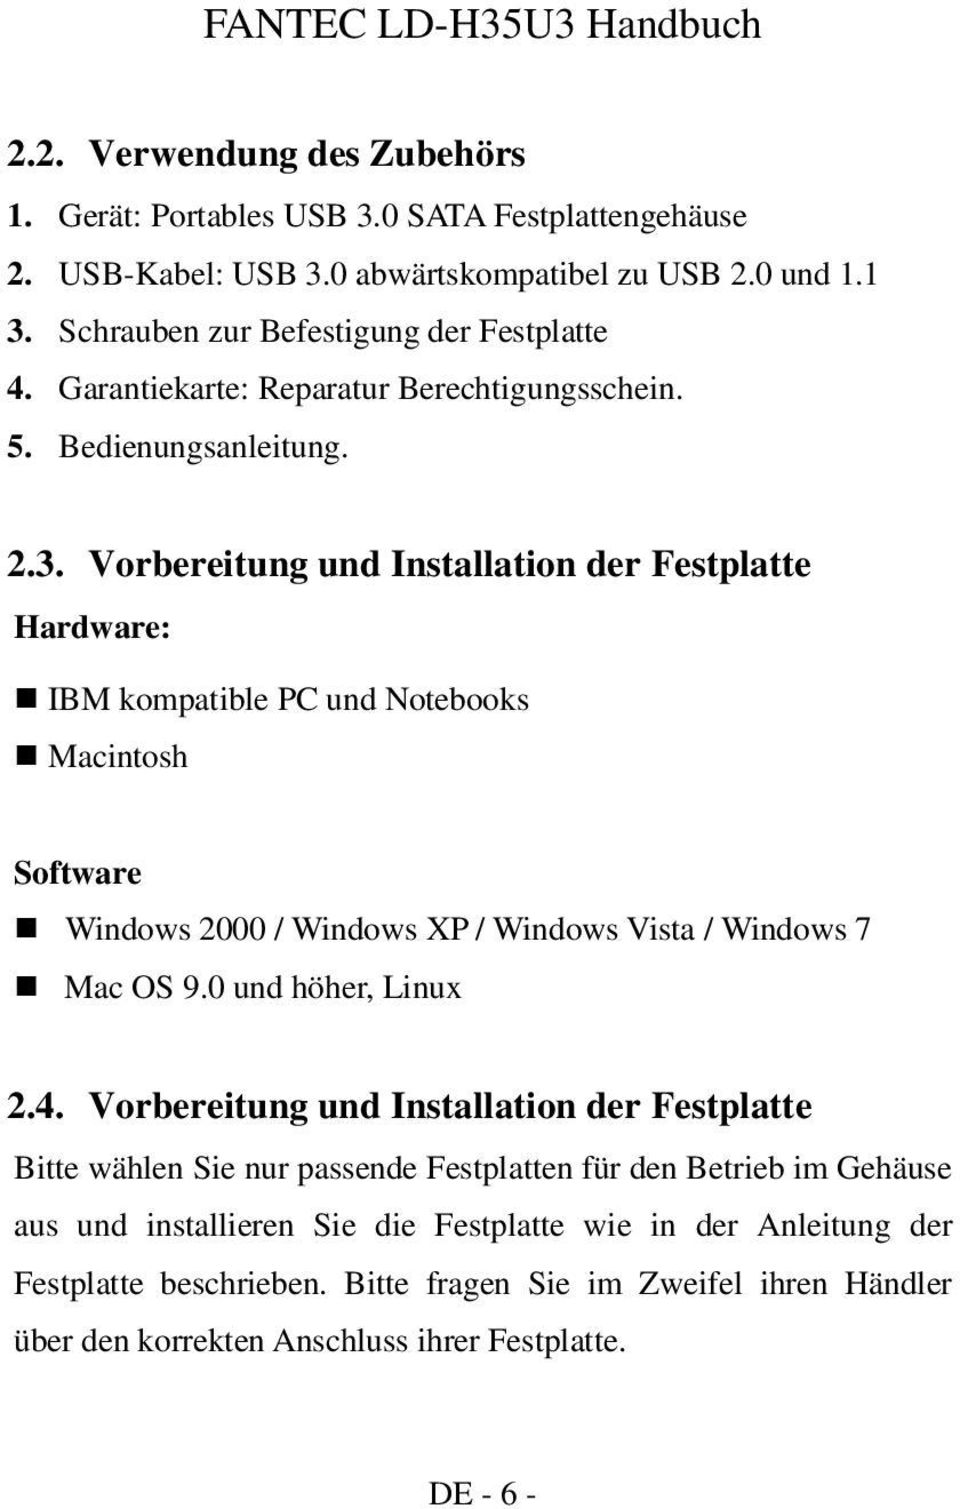 Vorbereitung und Installation der Festplatte Hardware: IBM kompatible PC und Notebooks Macintosh Software Windows 2000 / Windows XP / Windows Vista / Windows 7 Mac OS 9.